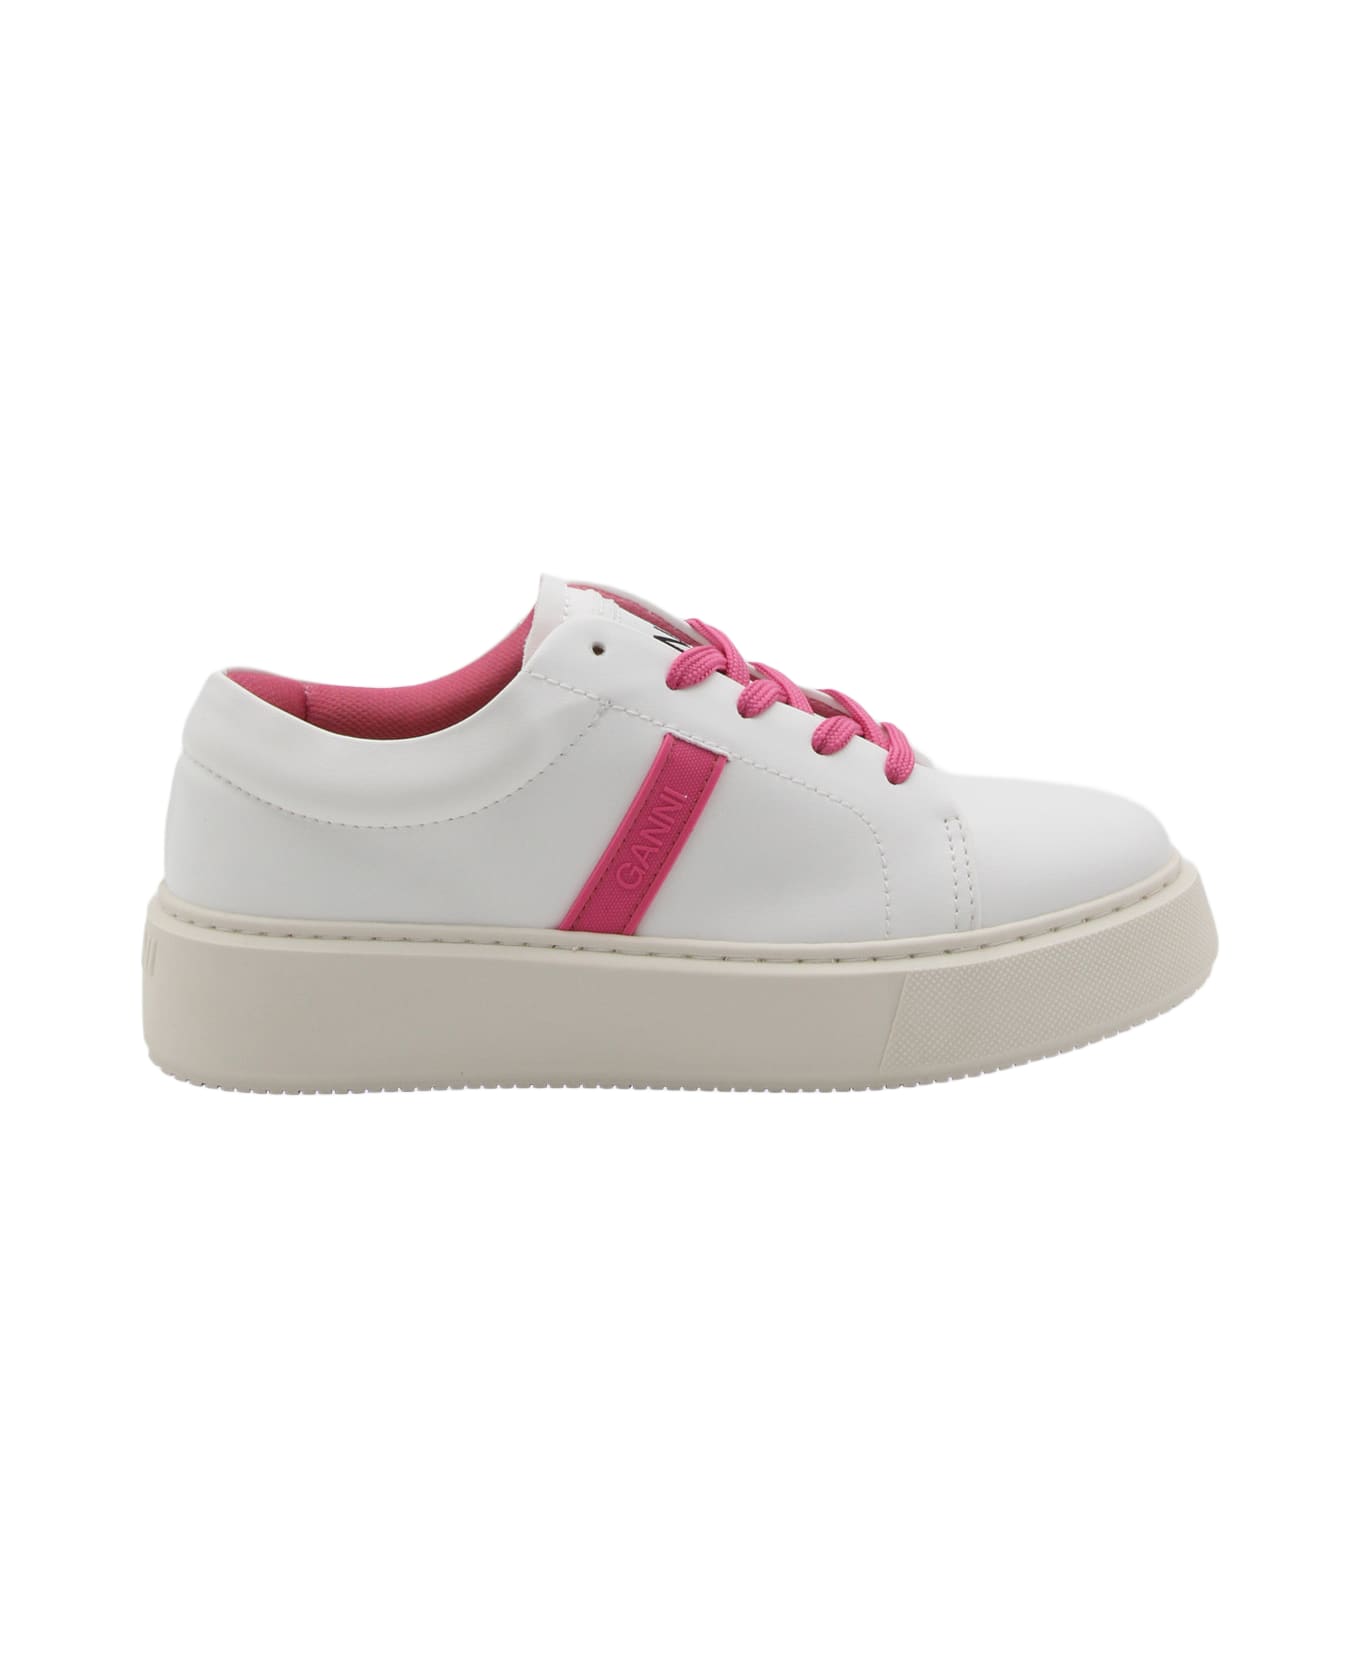 Ganni Shoking Pink Low Top Sneakers - Shocking Pink